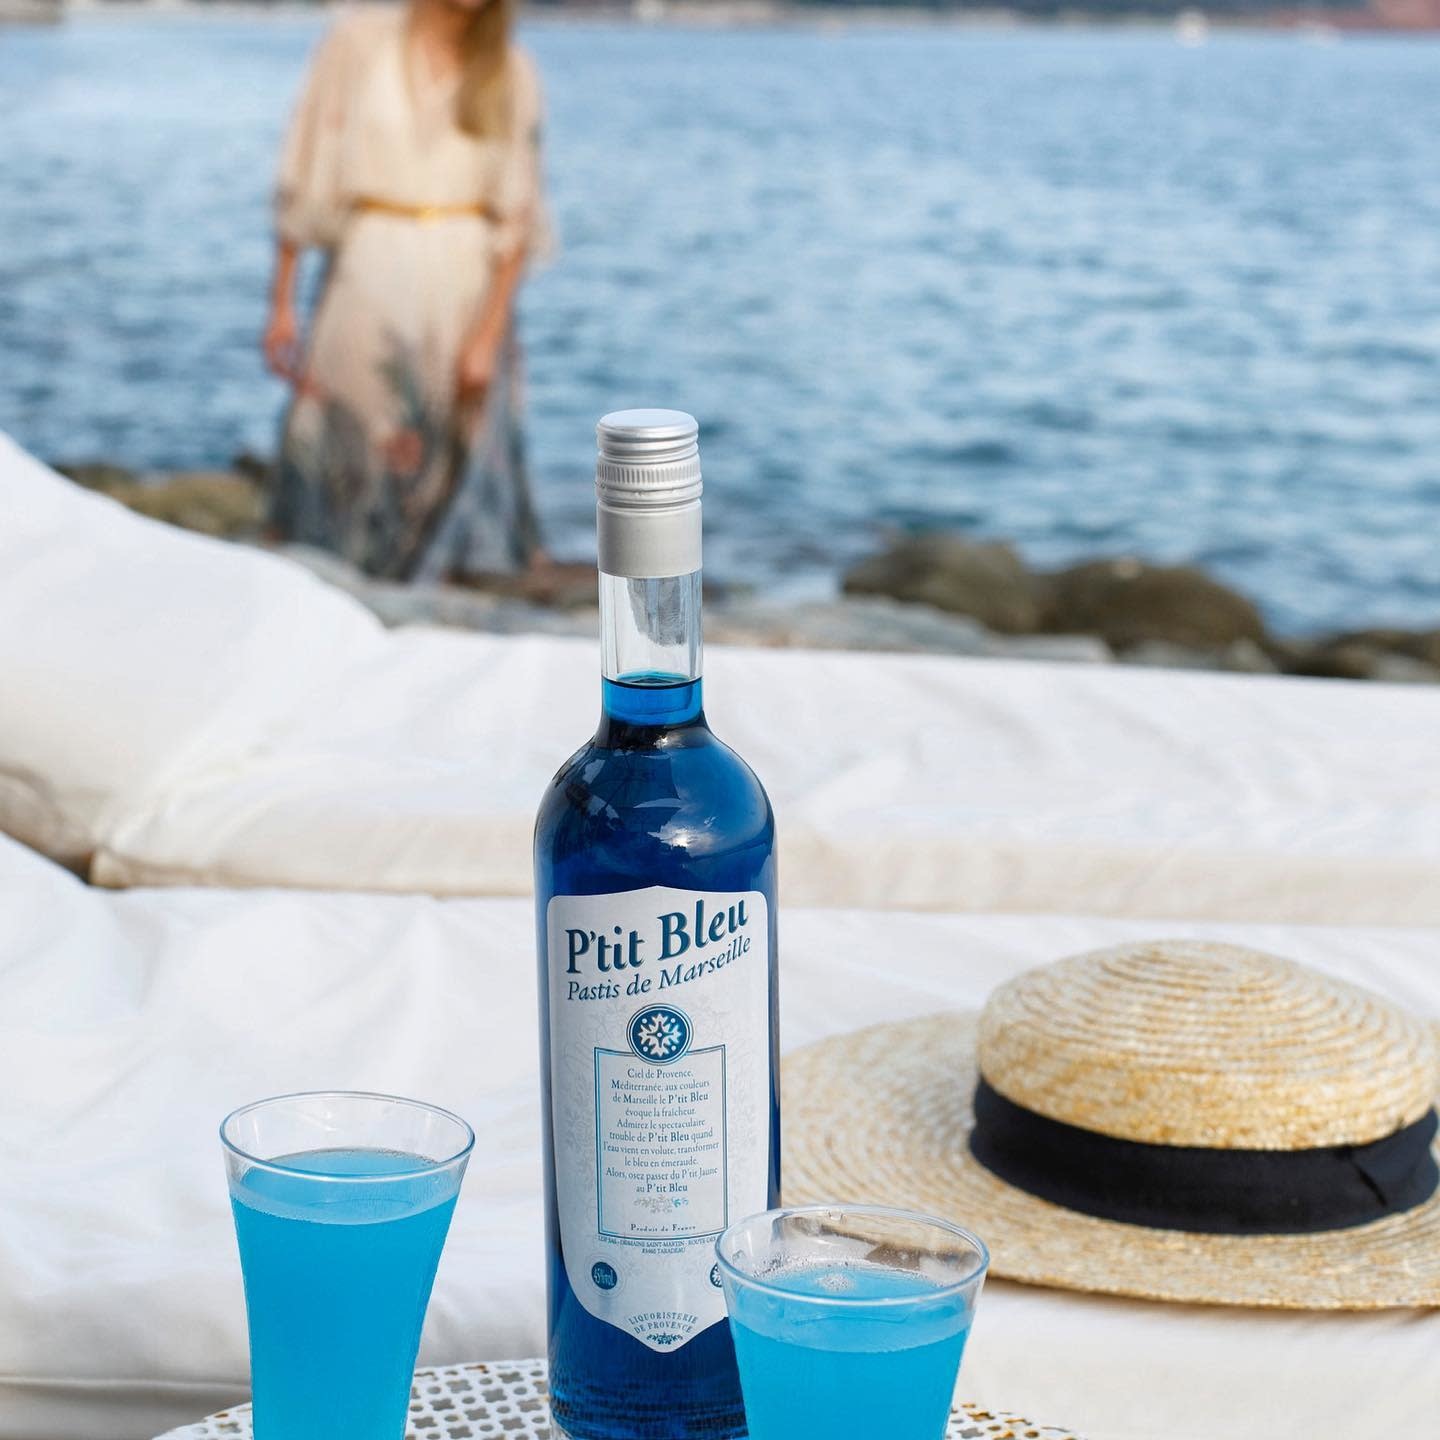 P'tit Bleu Pastis de Marseille 70 cl - Celebrating Taste